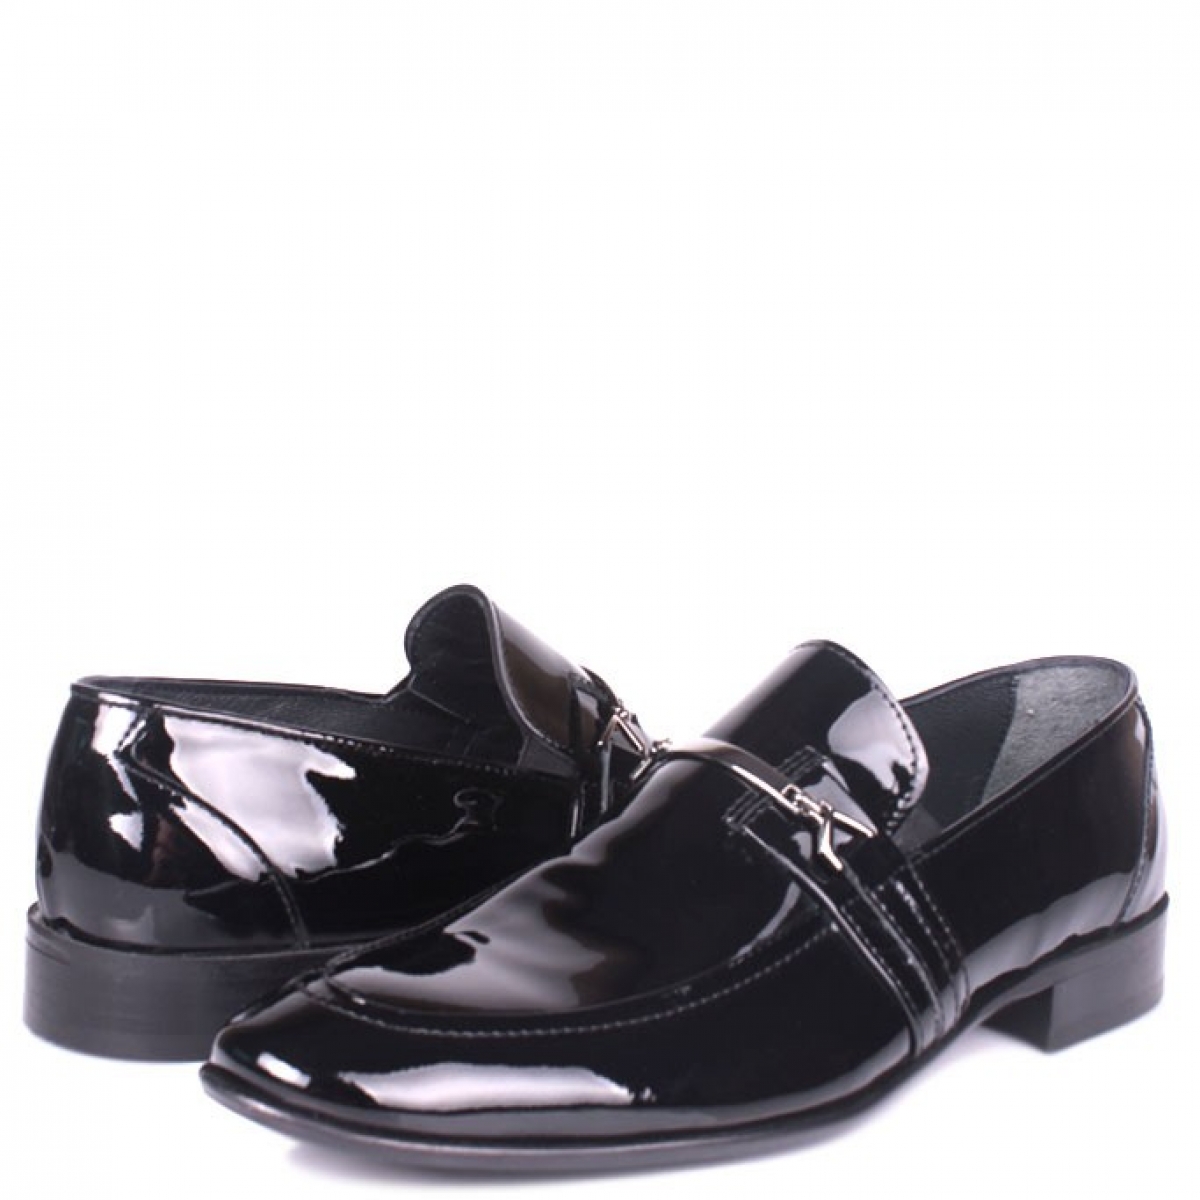 Flo - Erkan Kaban 972 020 Erkek Siyah Rugan Klasik Büyük & Küçük Numara Ayakkabı. 5